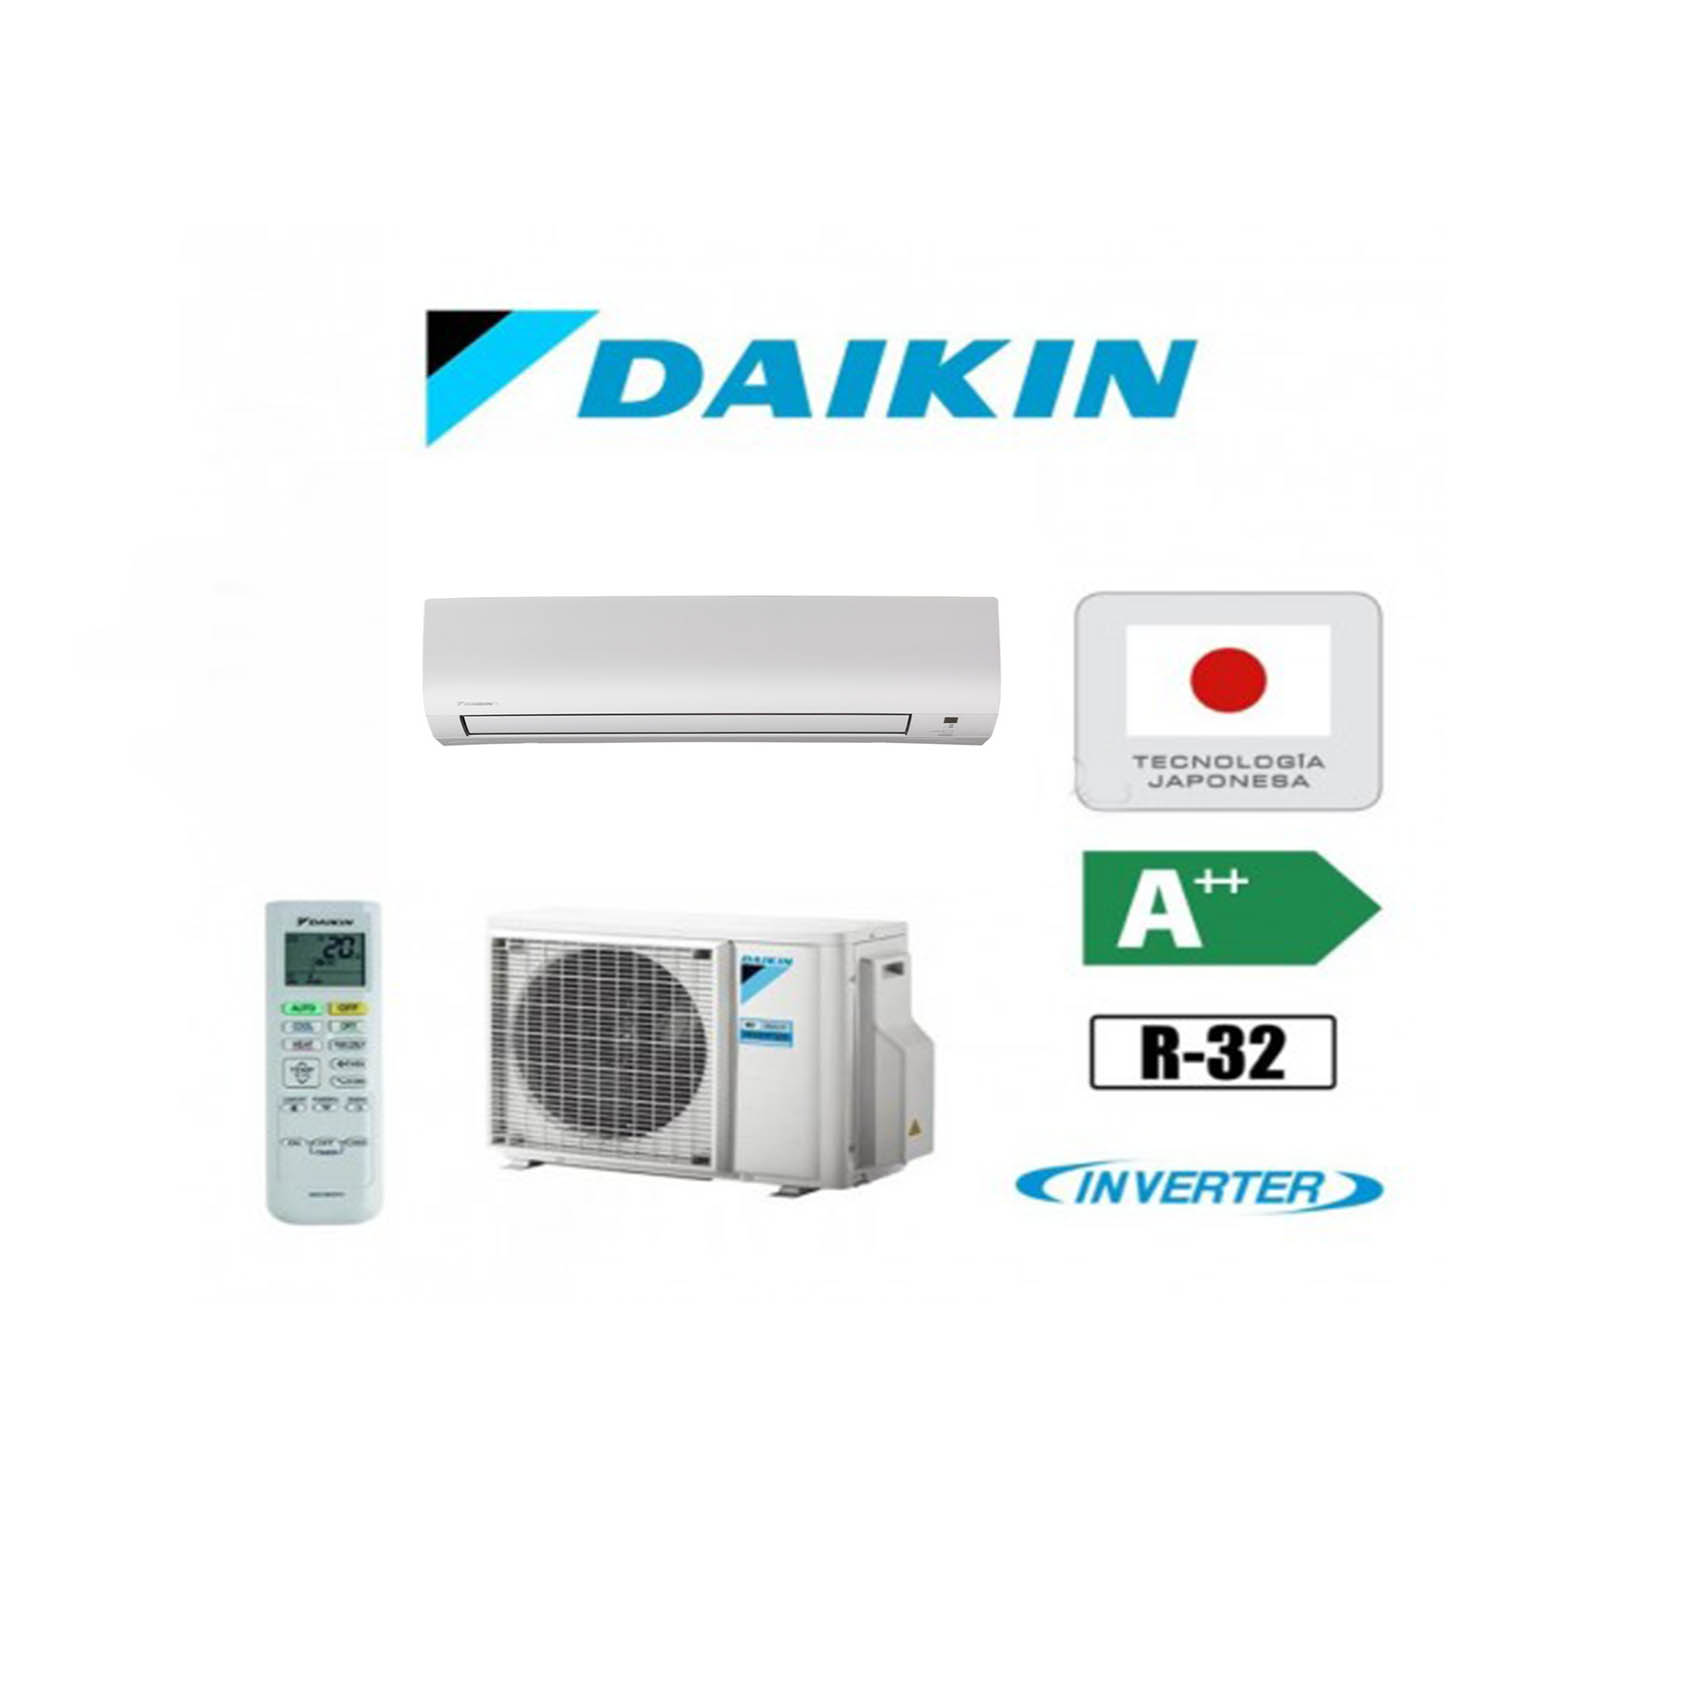 Aire acondicionado Split de la marca Daikin y modelo TXP25M con tecnologia Inverter y gas R22 con A++ eficiencia energetica